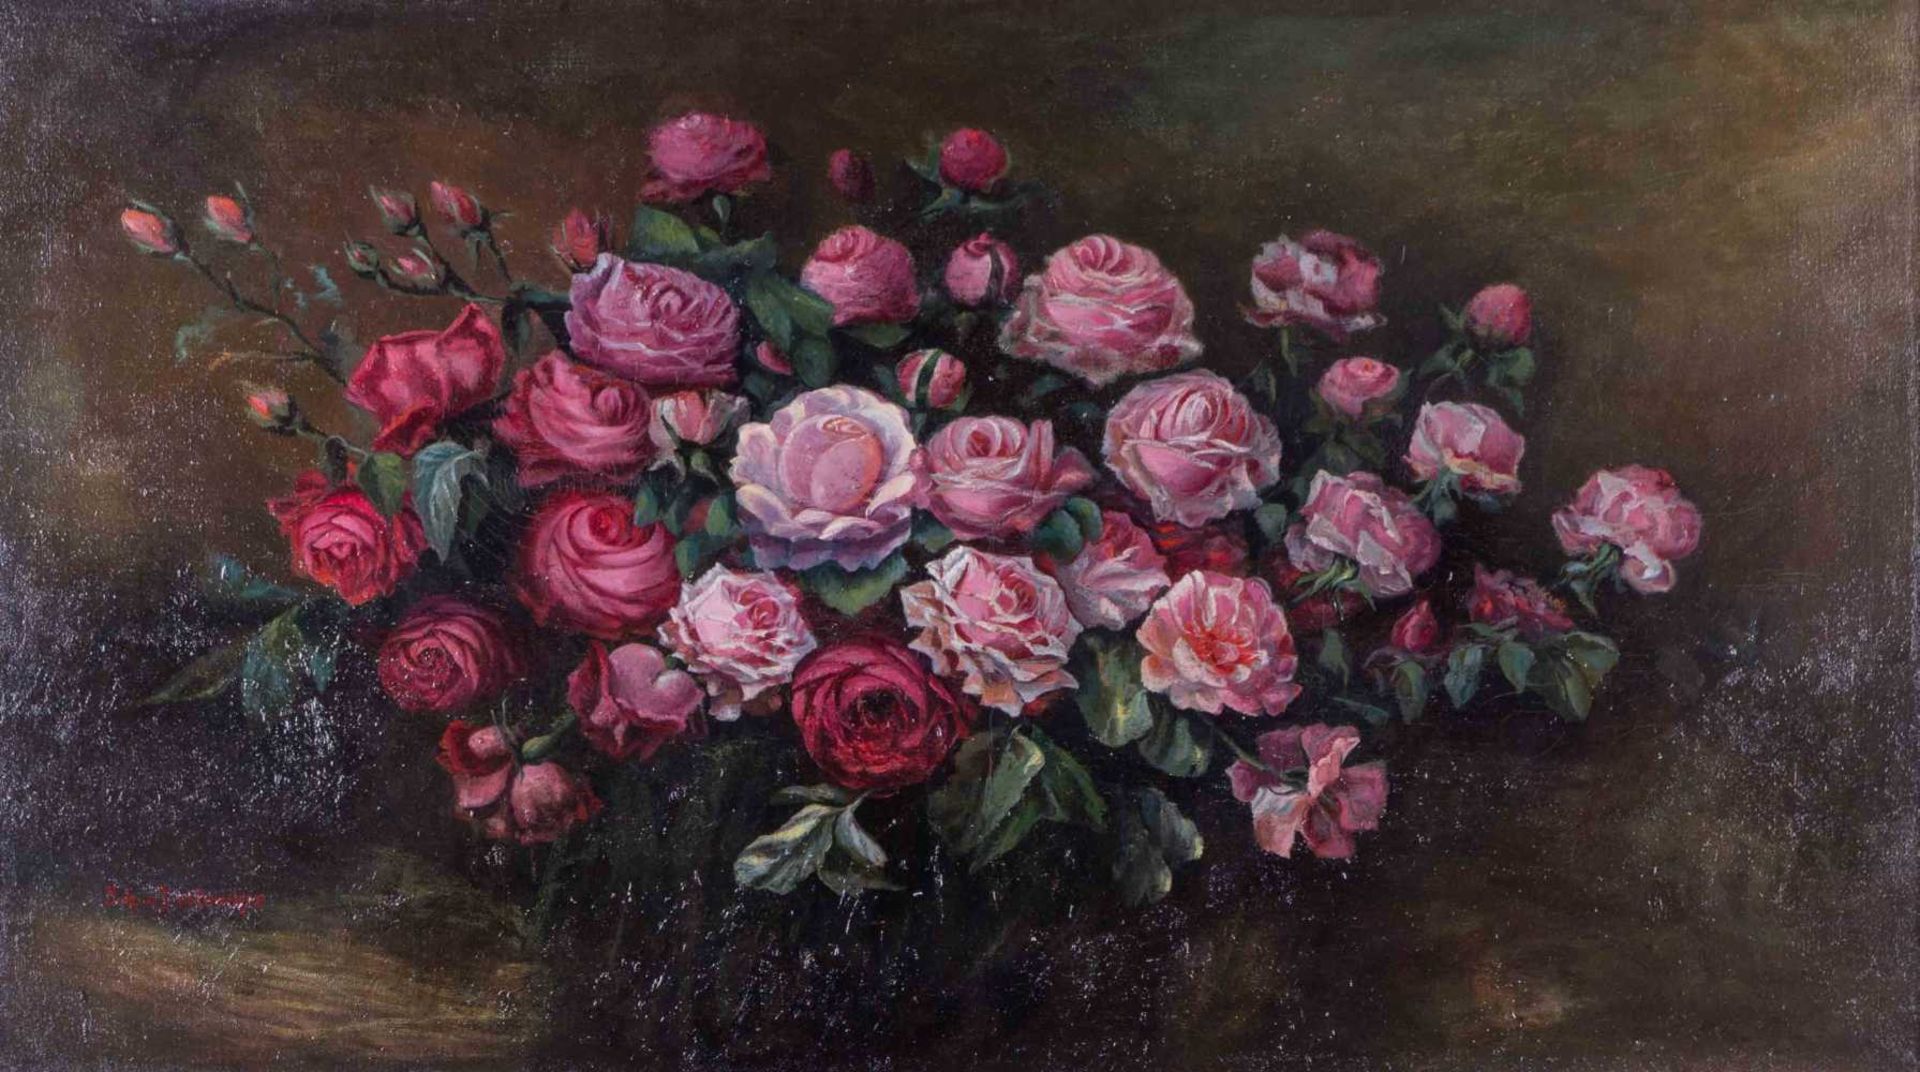 Johanna VON DESTOUCHES (1869-1956) "Rosen Stillleben" Gemälde Öl/Leinwand, 68,5 cm x 121,5 cm, links